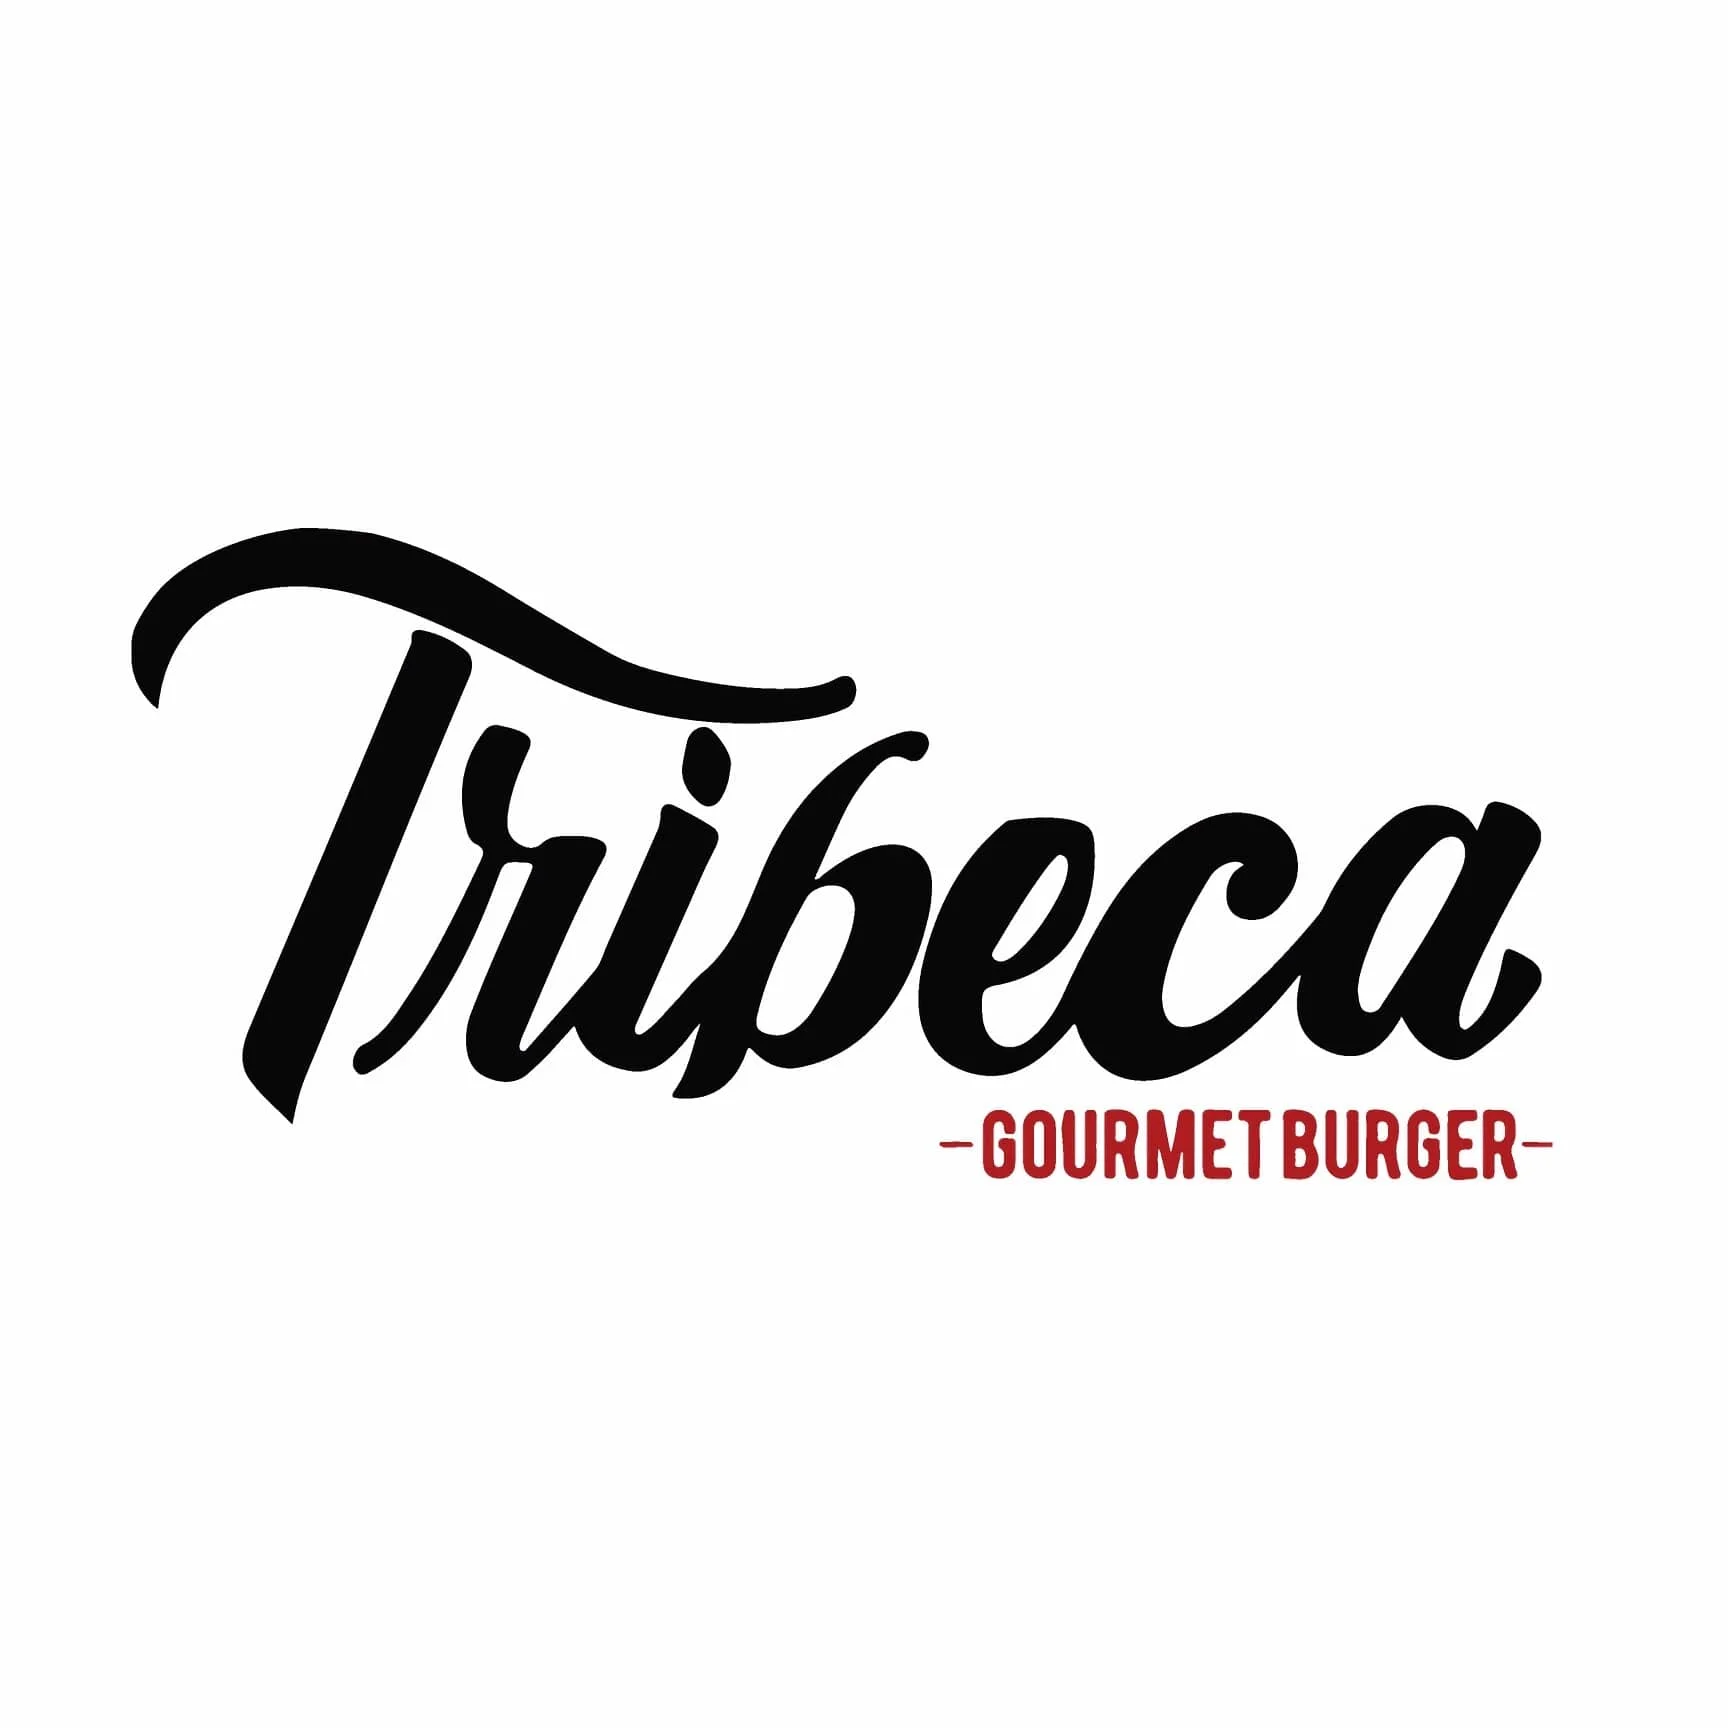 Restaurante-tribeca-gourmet-burger-23604